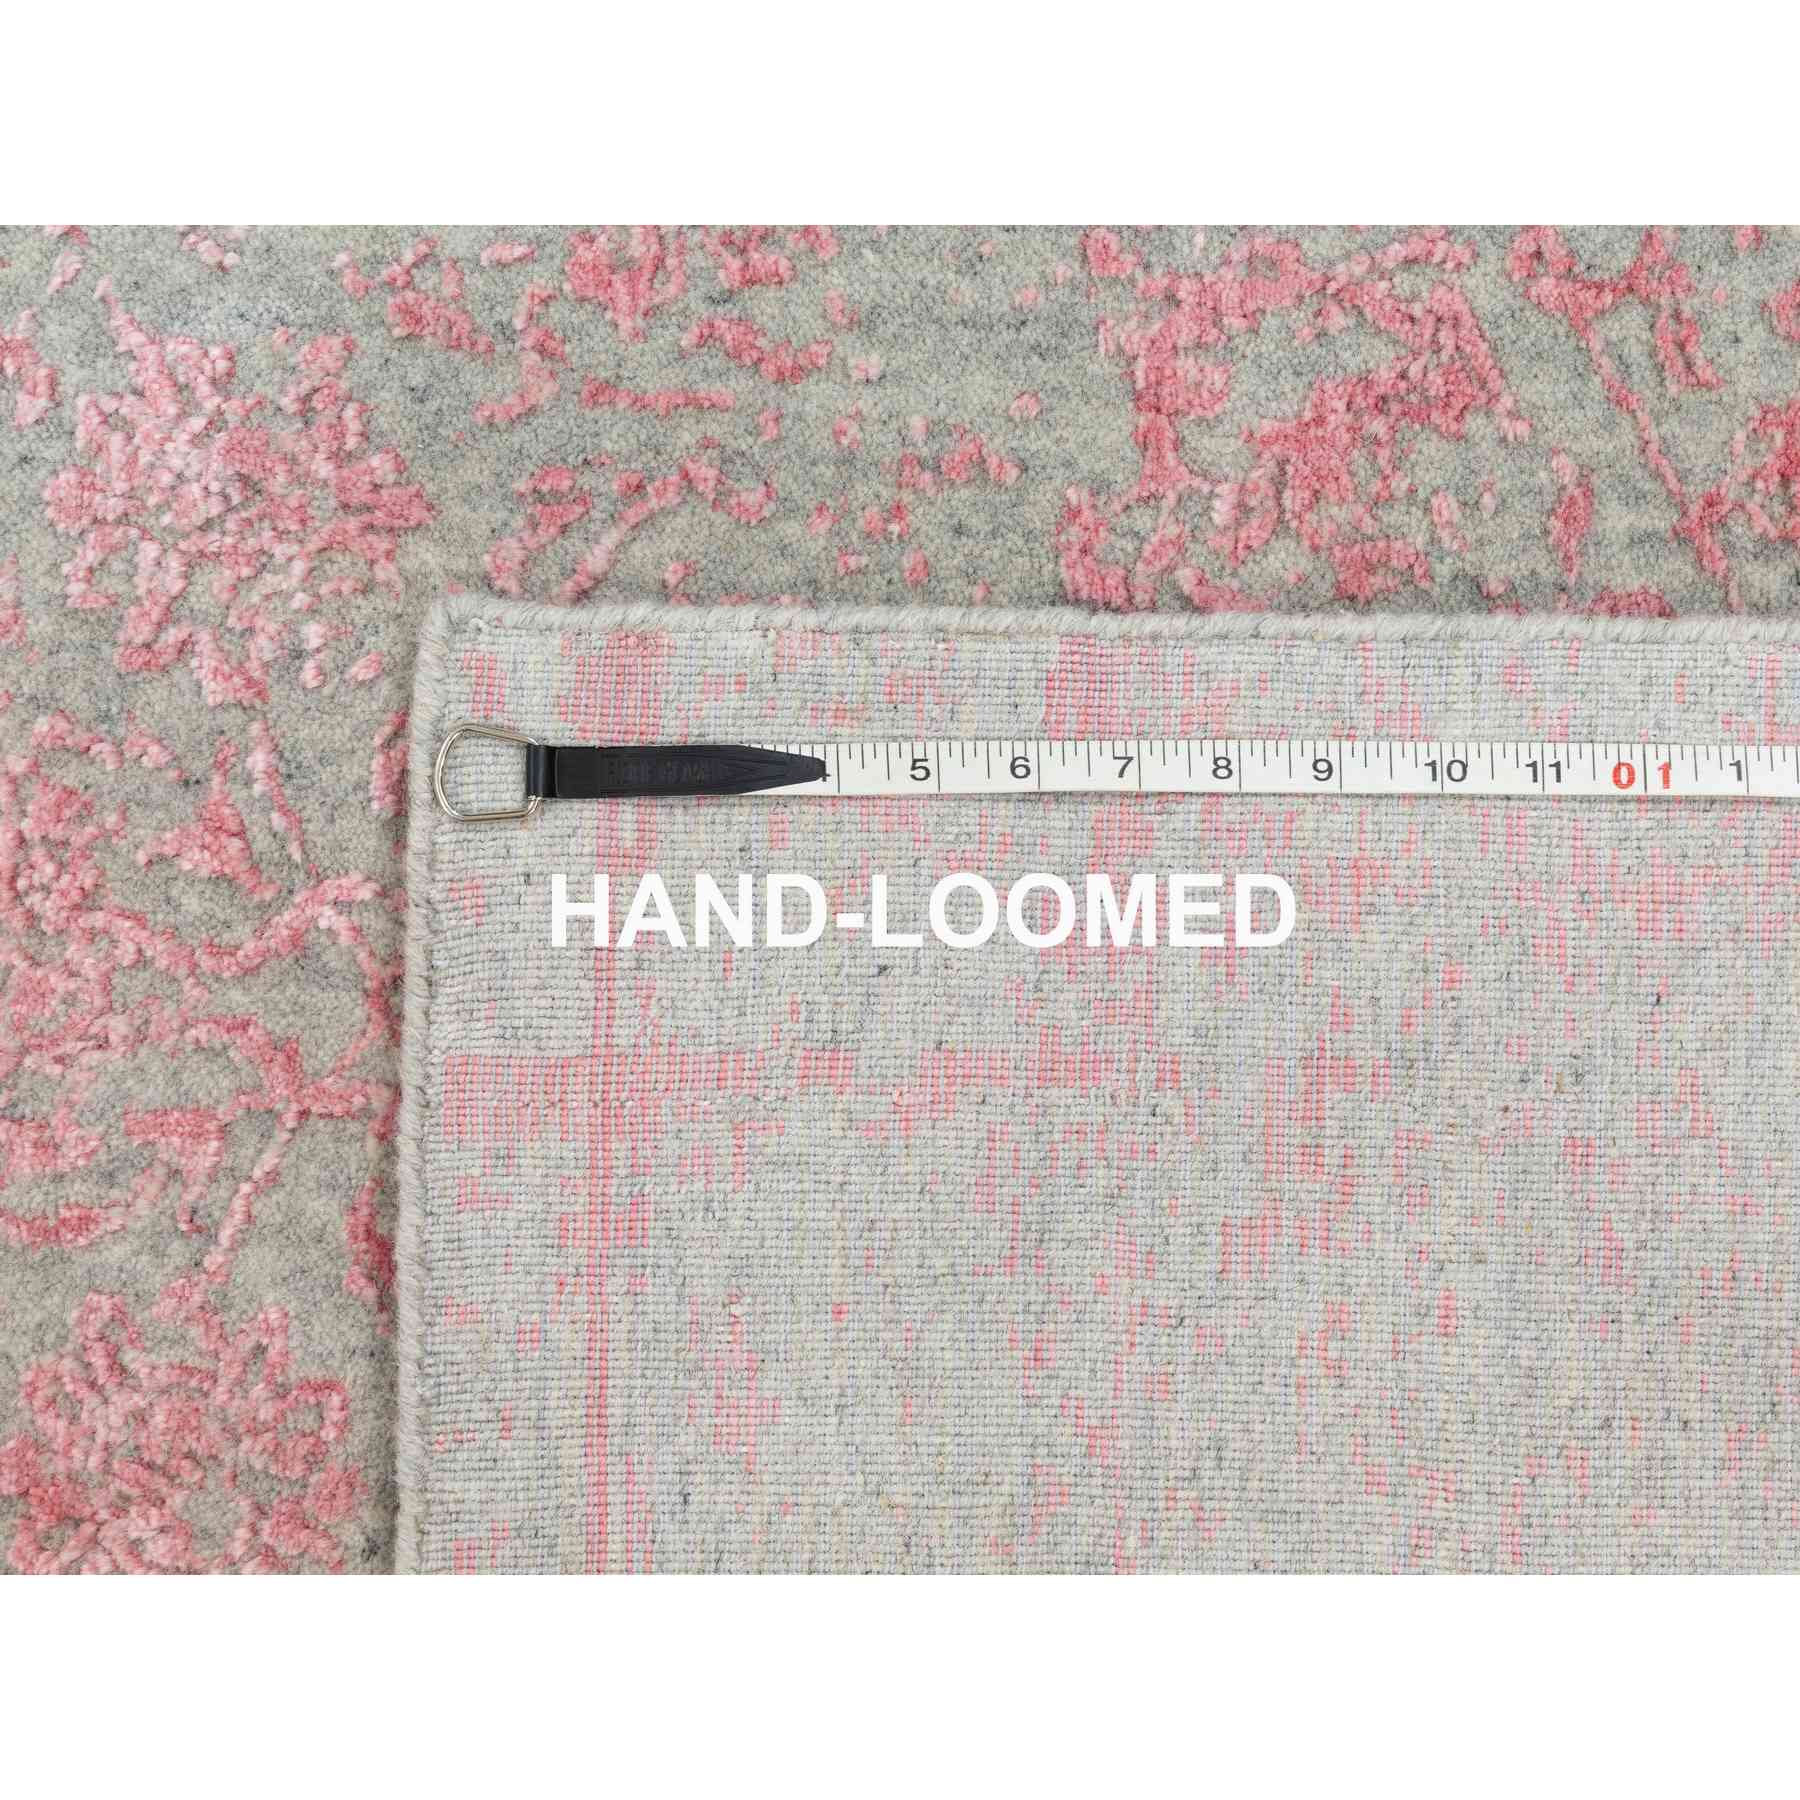 Hand-Loomed-Hand-Loomed-Rug-292905